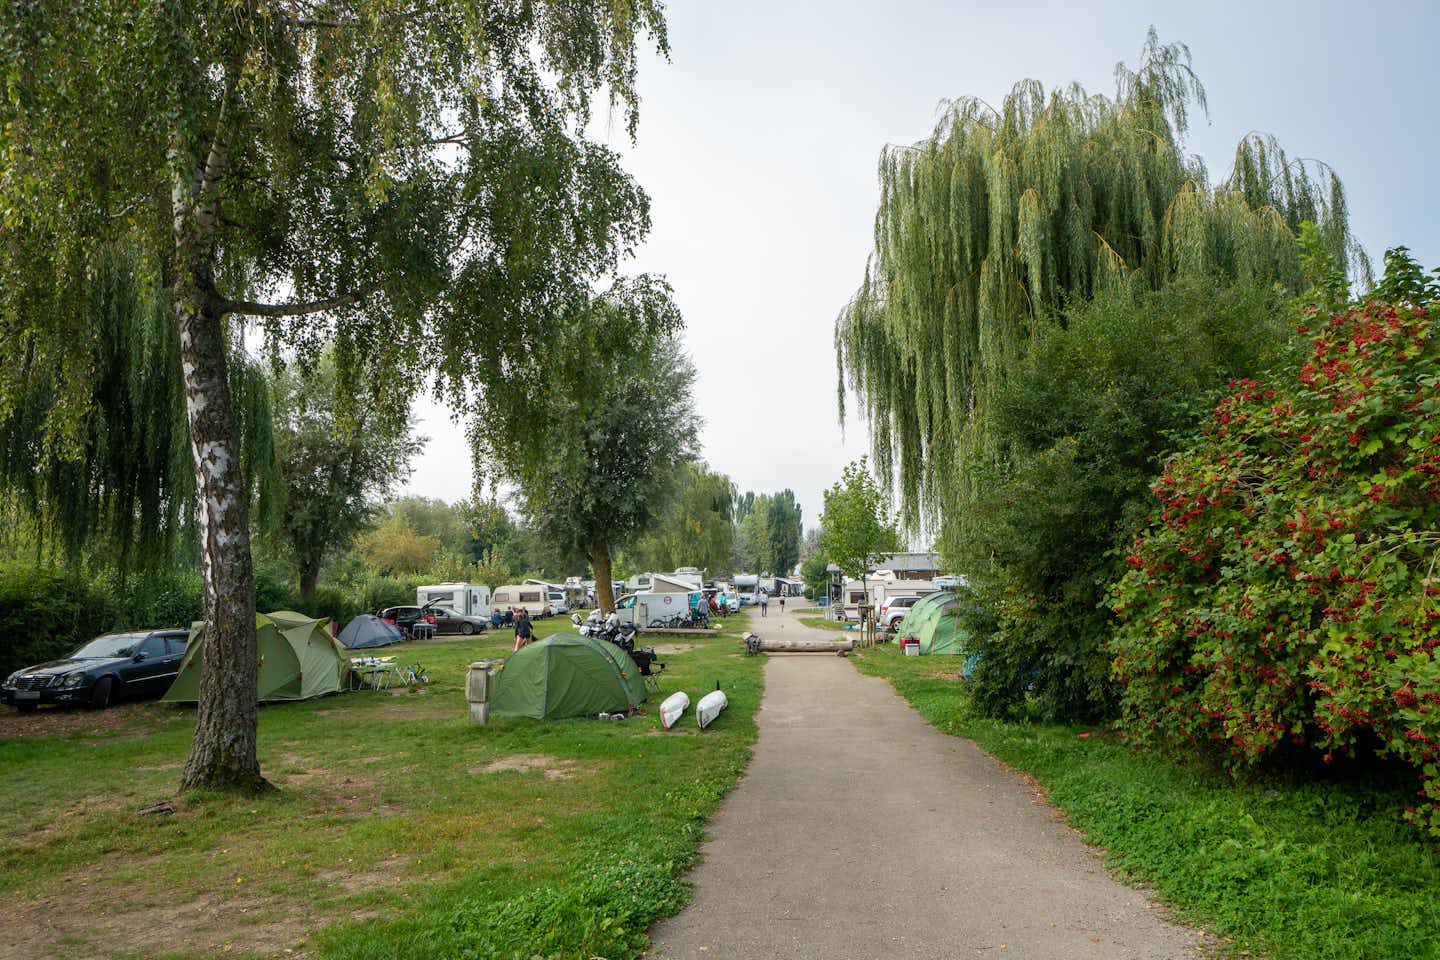 Insel-Campingplatz Sandseele - Wohnmobil- und  Wohnwagenstellplätze im Schatten der Bäume auf der Wiese